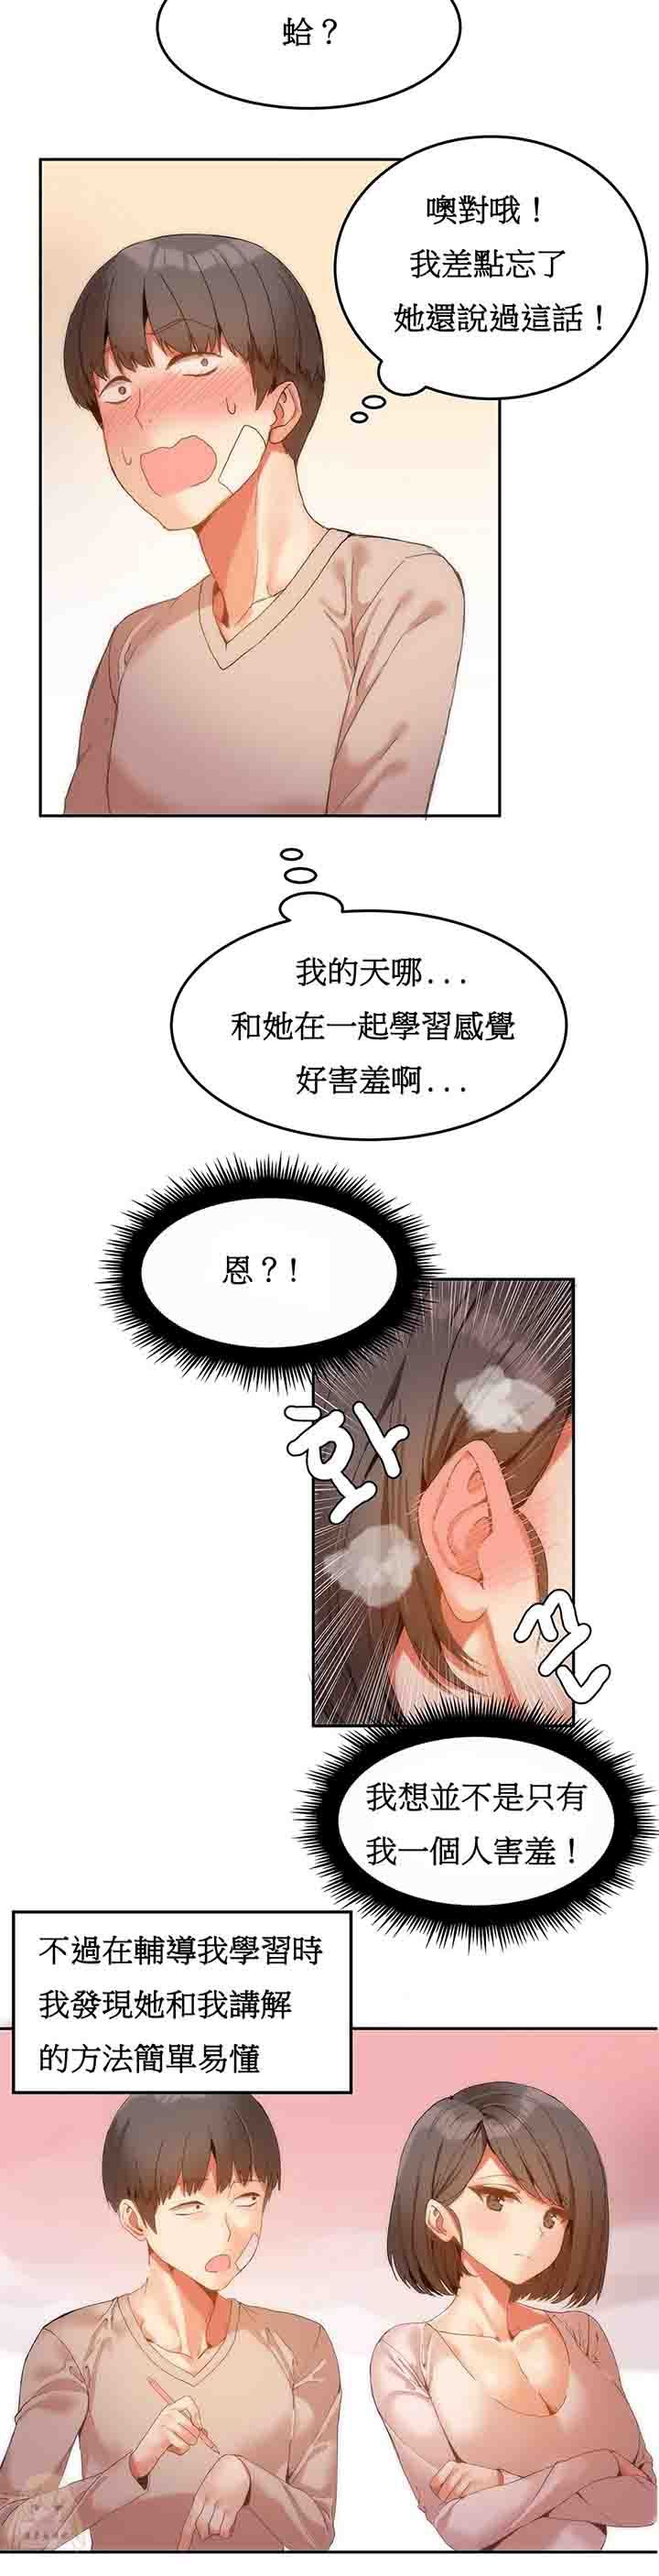 韩国污漫画 寄宿公寓-陰氣之洞 第6话 9